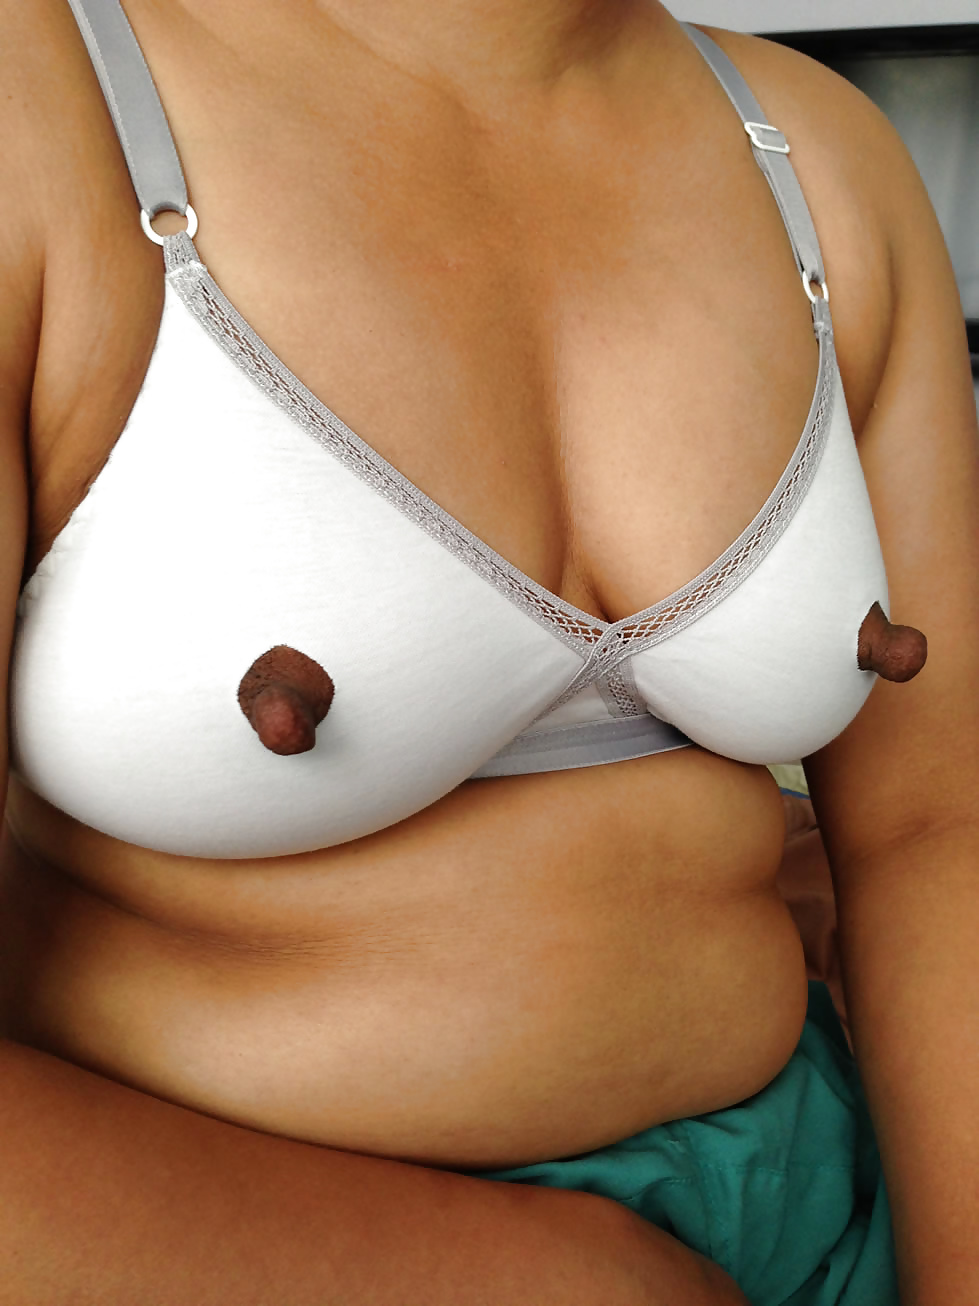 Big Juicy Indian Nipples - Photo #13.